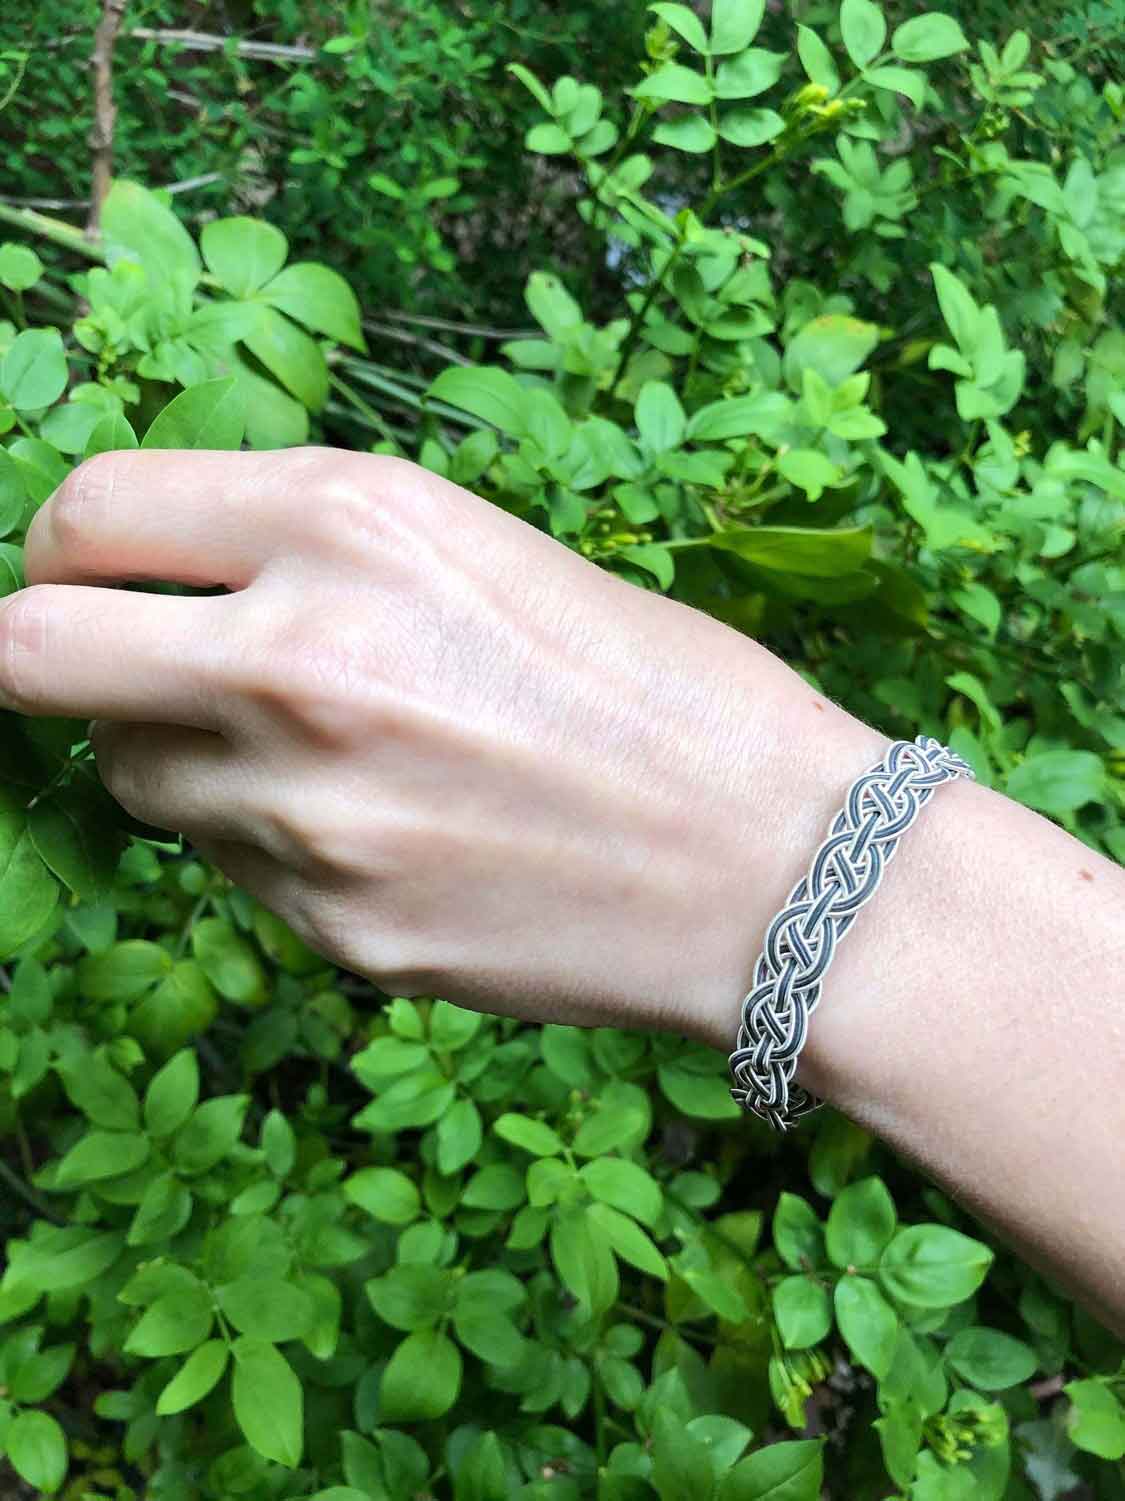 Unisex Silver WOVEN BRACELET, Wonderful Gift Idea, Braided Sterling Silver Chain Bracelet